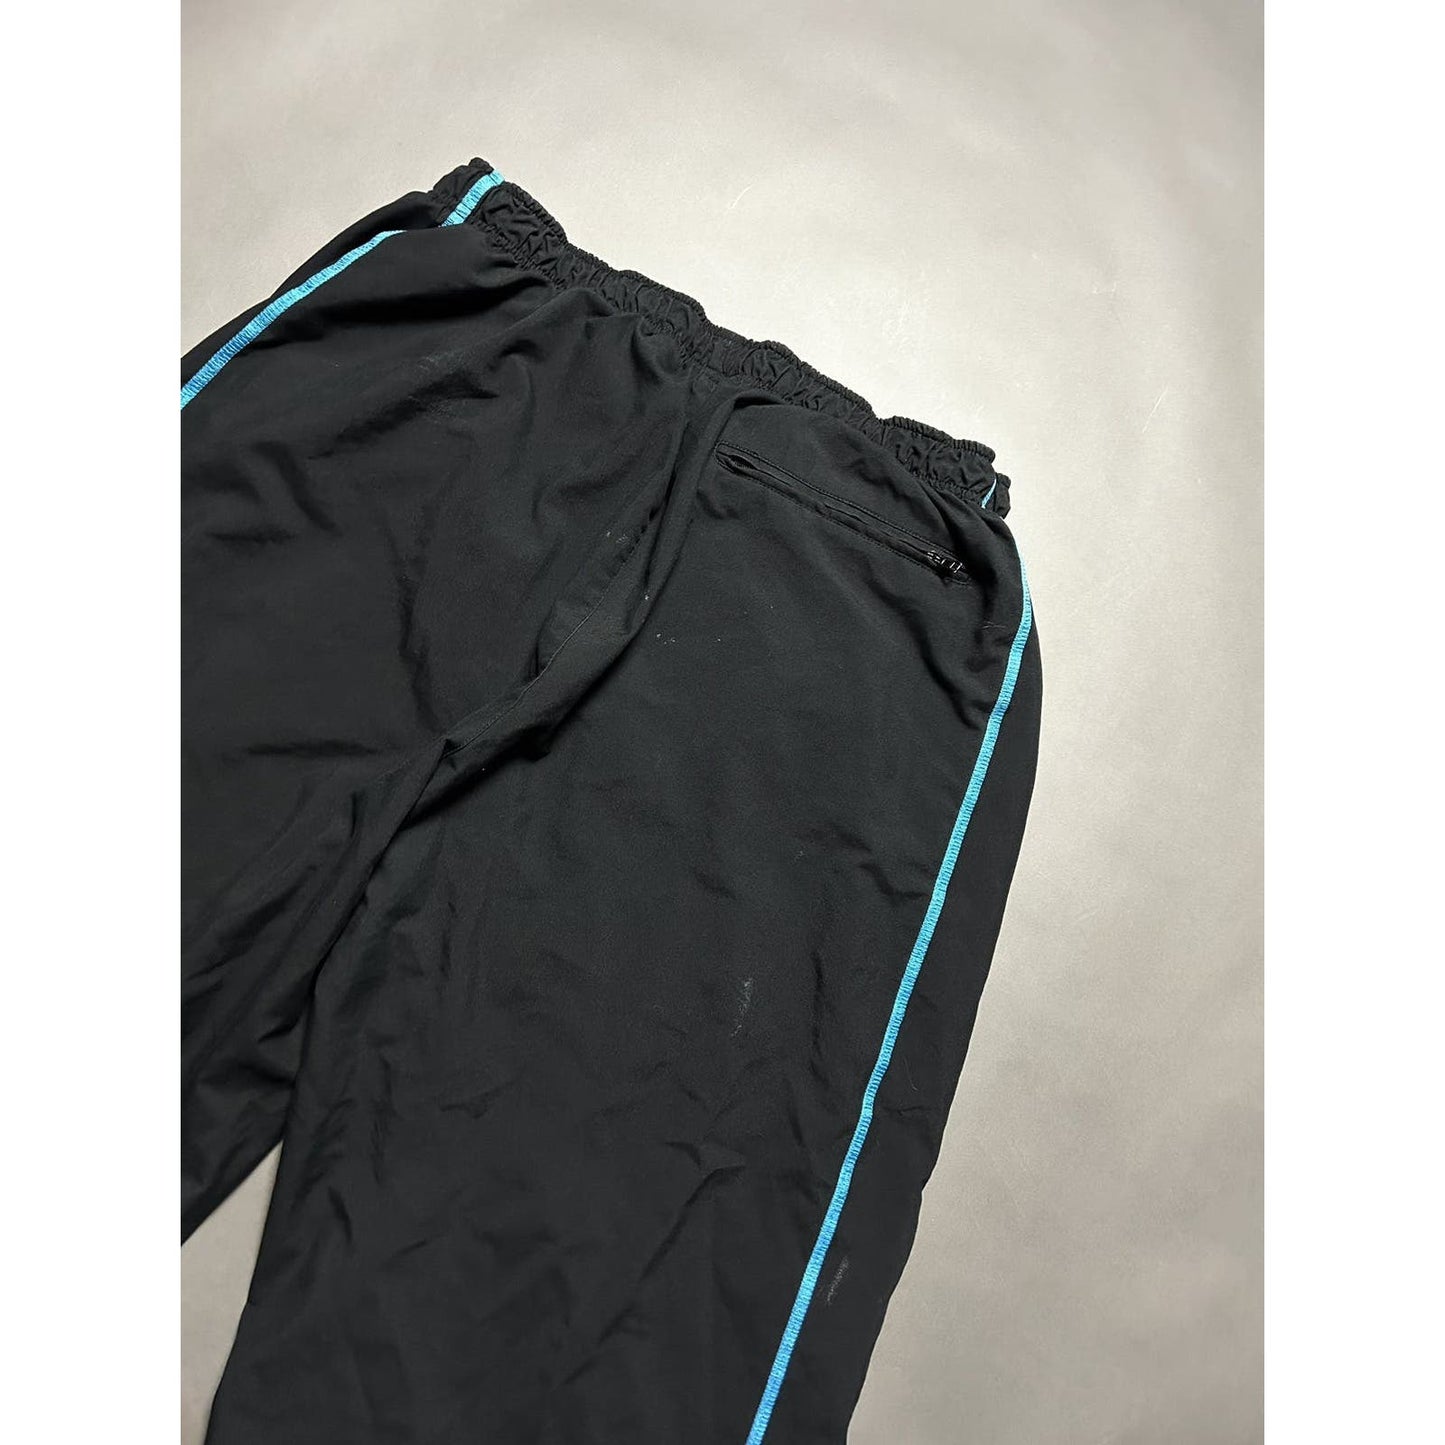 Nike vintage black blue nylon track pants small swoosh drill